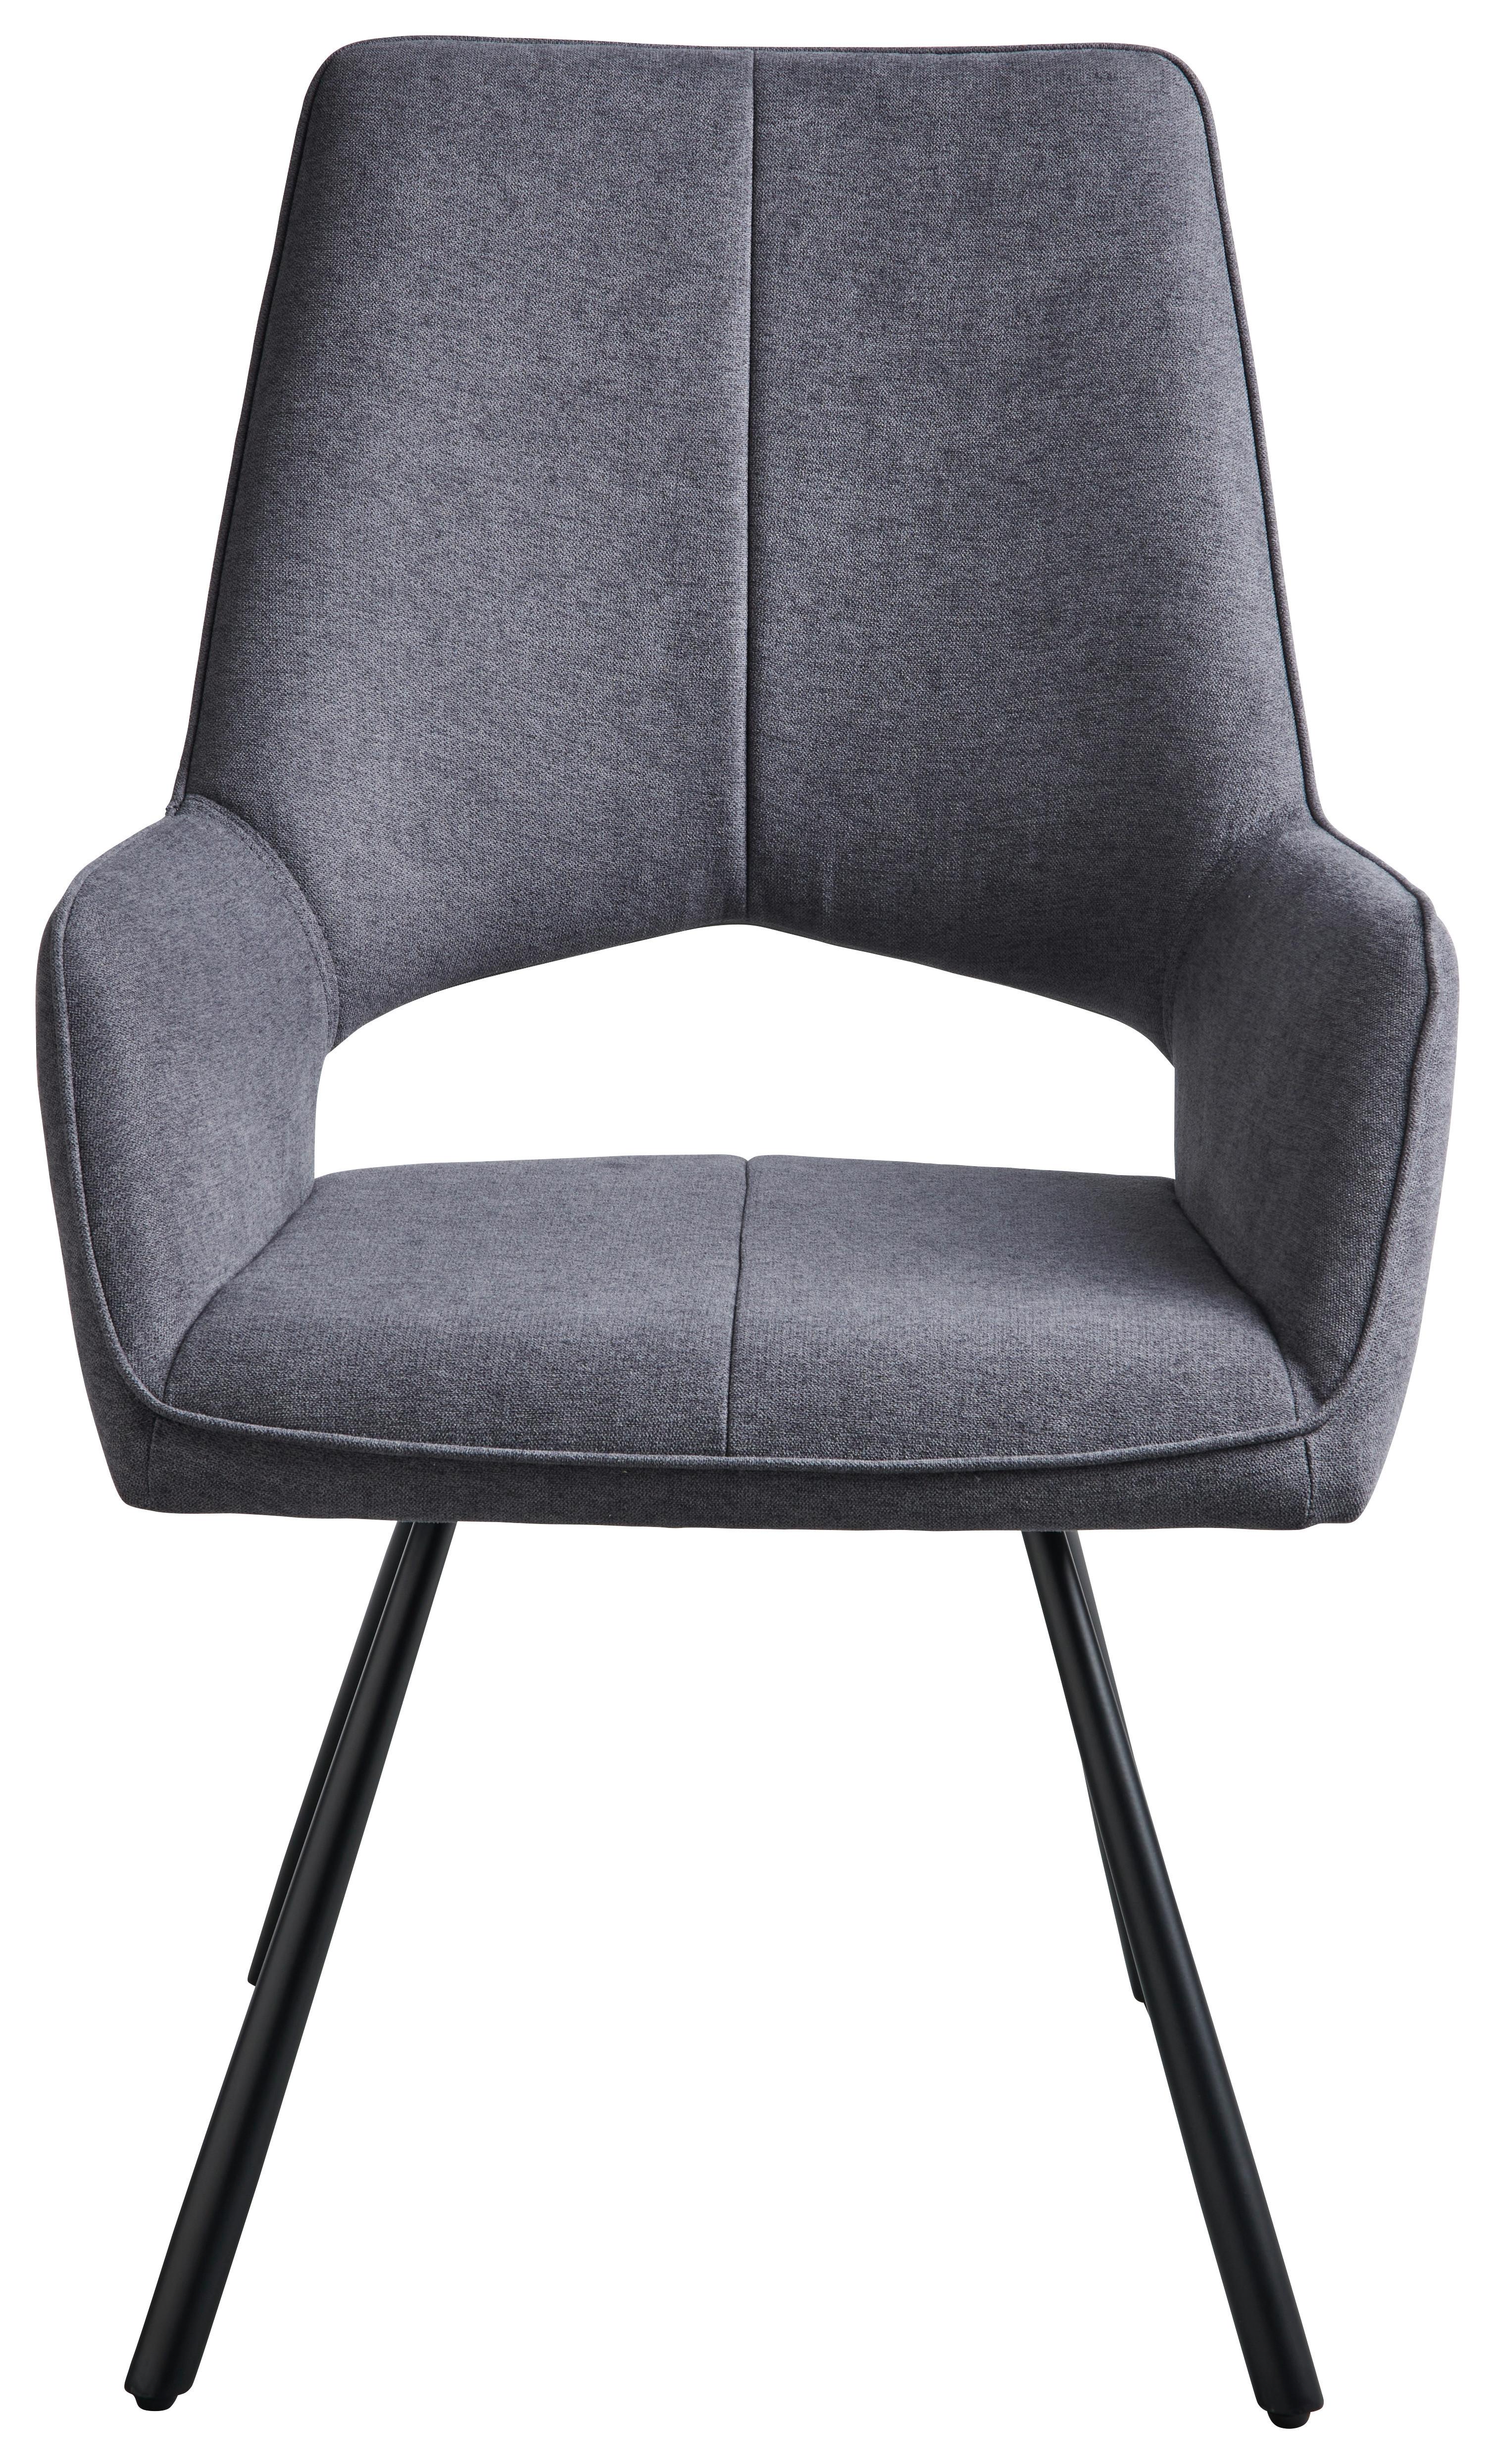 Čtyřnohá Židle Beatrice Ii - šedá/černá, Moderní, kov/textil (60/93/65cm)